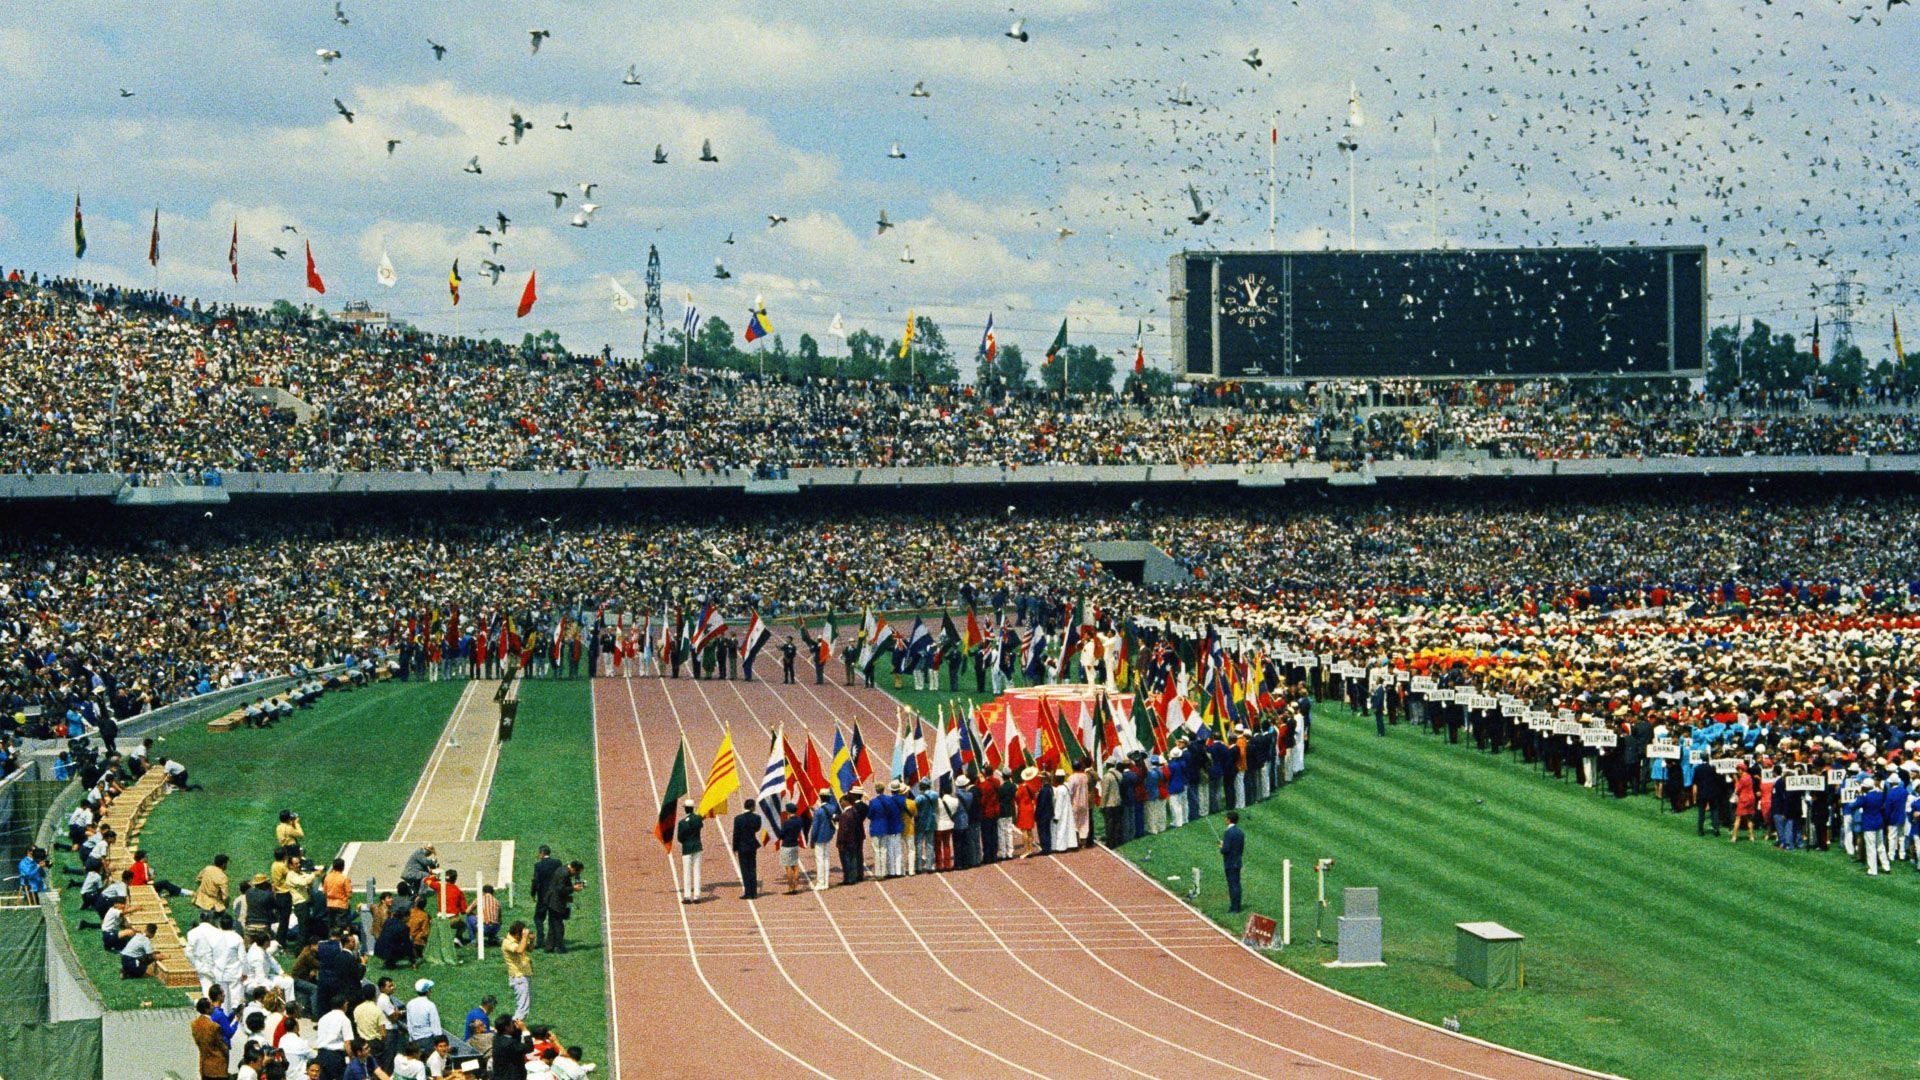 Столица олимпиады 1996 года. Олимпийские игры в Мексике 1968. Мехико Олимпийский стадион 1968. 19 Олимпийские игры в Мехико.